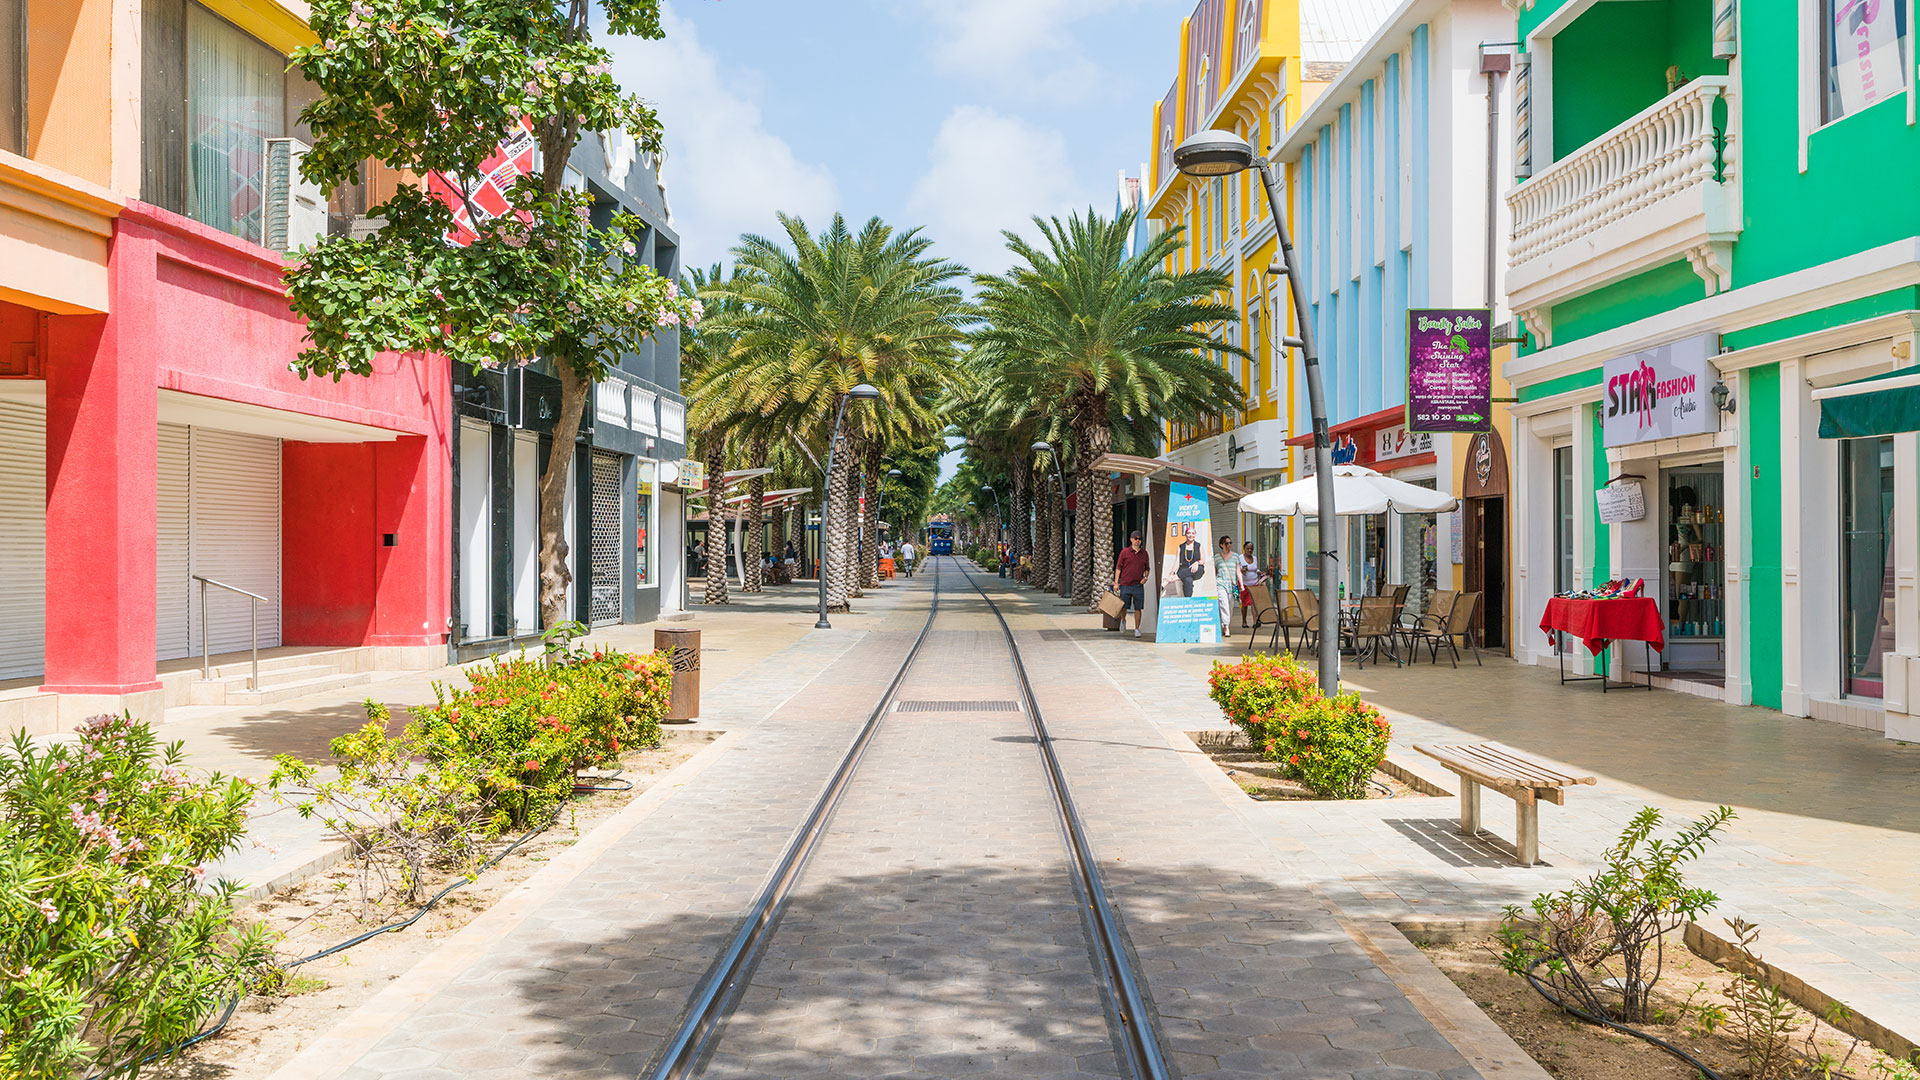 Si se viaja a Aruba, no se puede dejar de visitar Oranjestad, la Capital de la isla en donde se encontrarán las tiendas de lujo con las más reconocidas marcas del mundo rodeadas de edificios emblemáticos restaurados